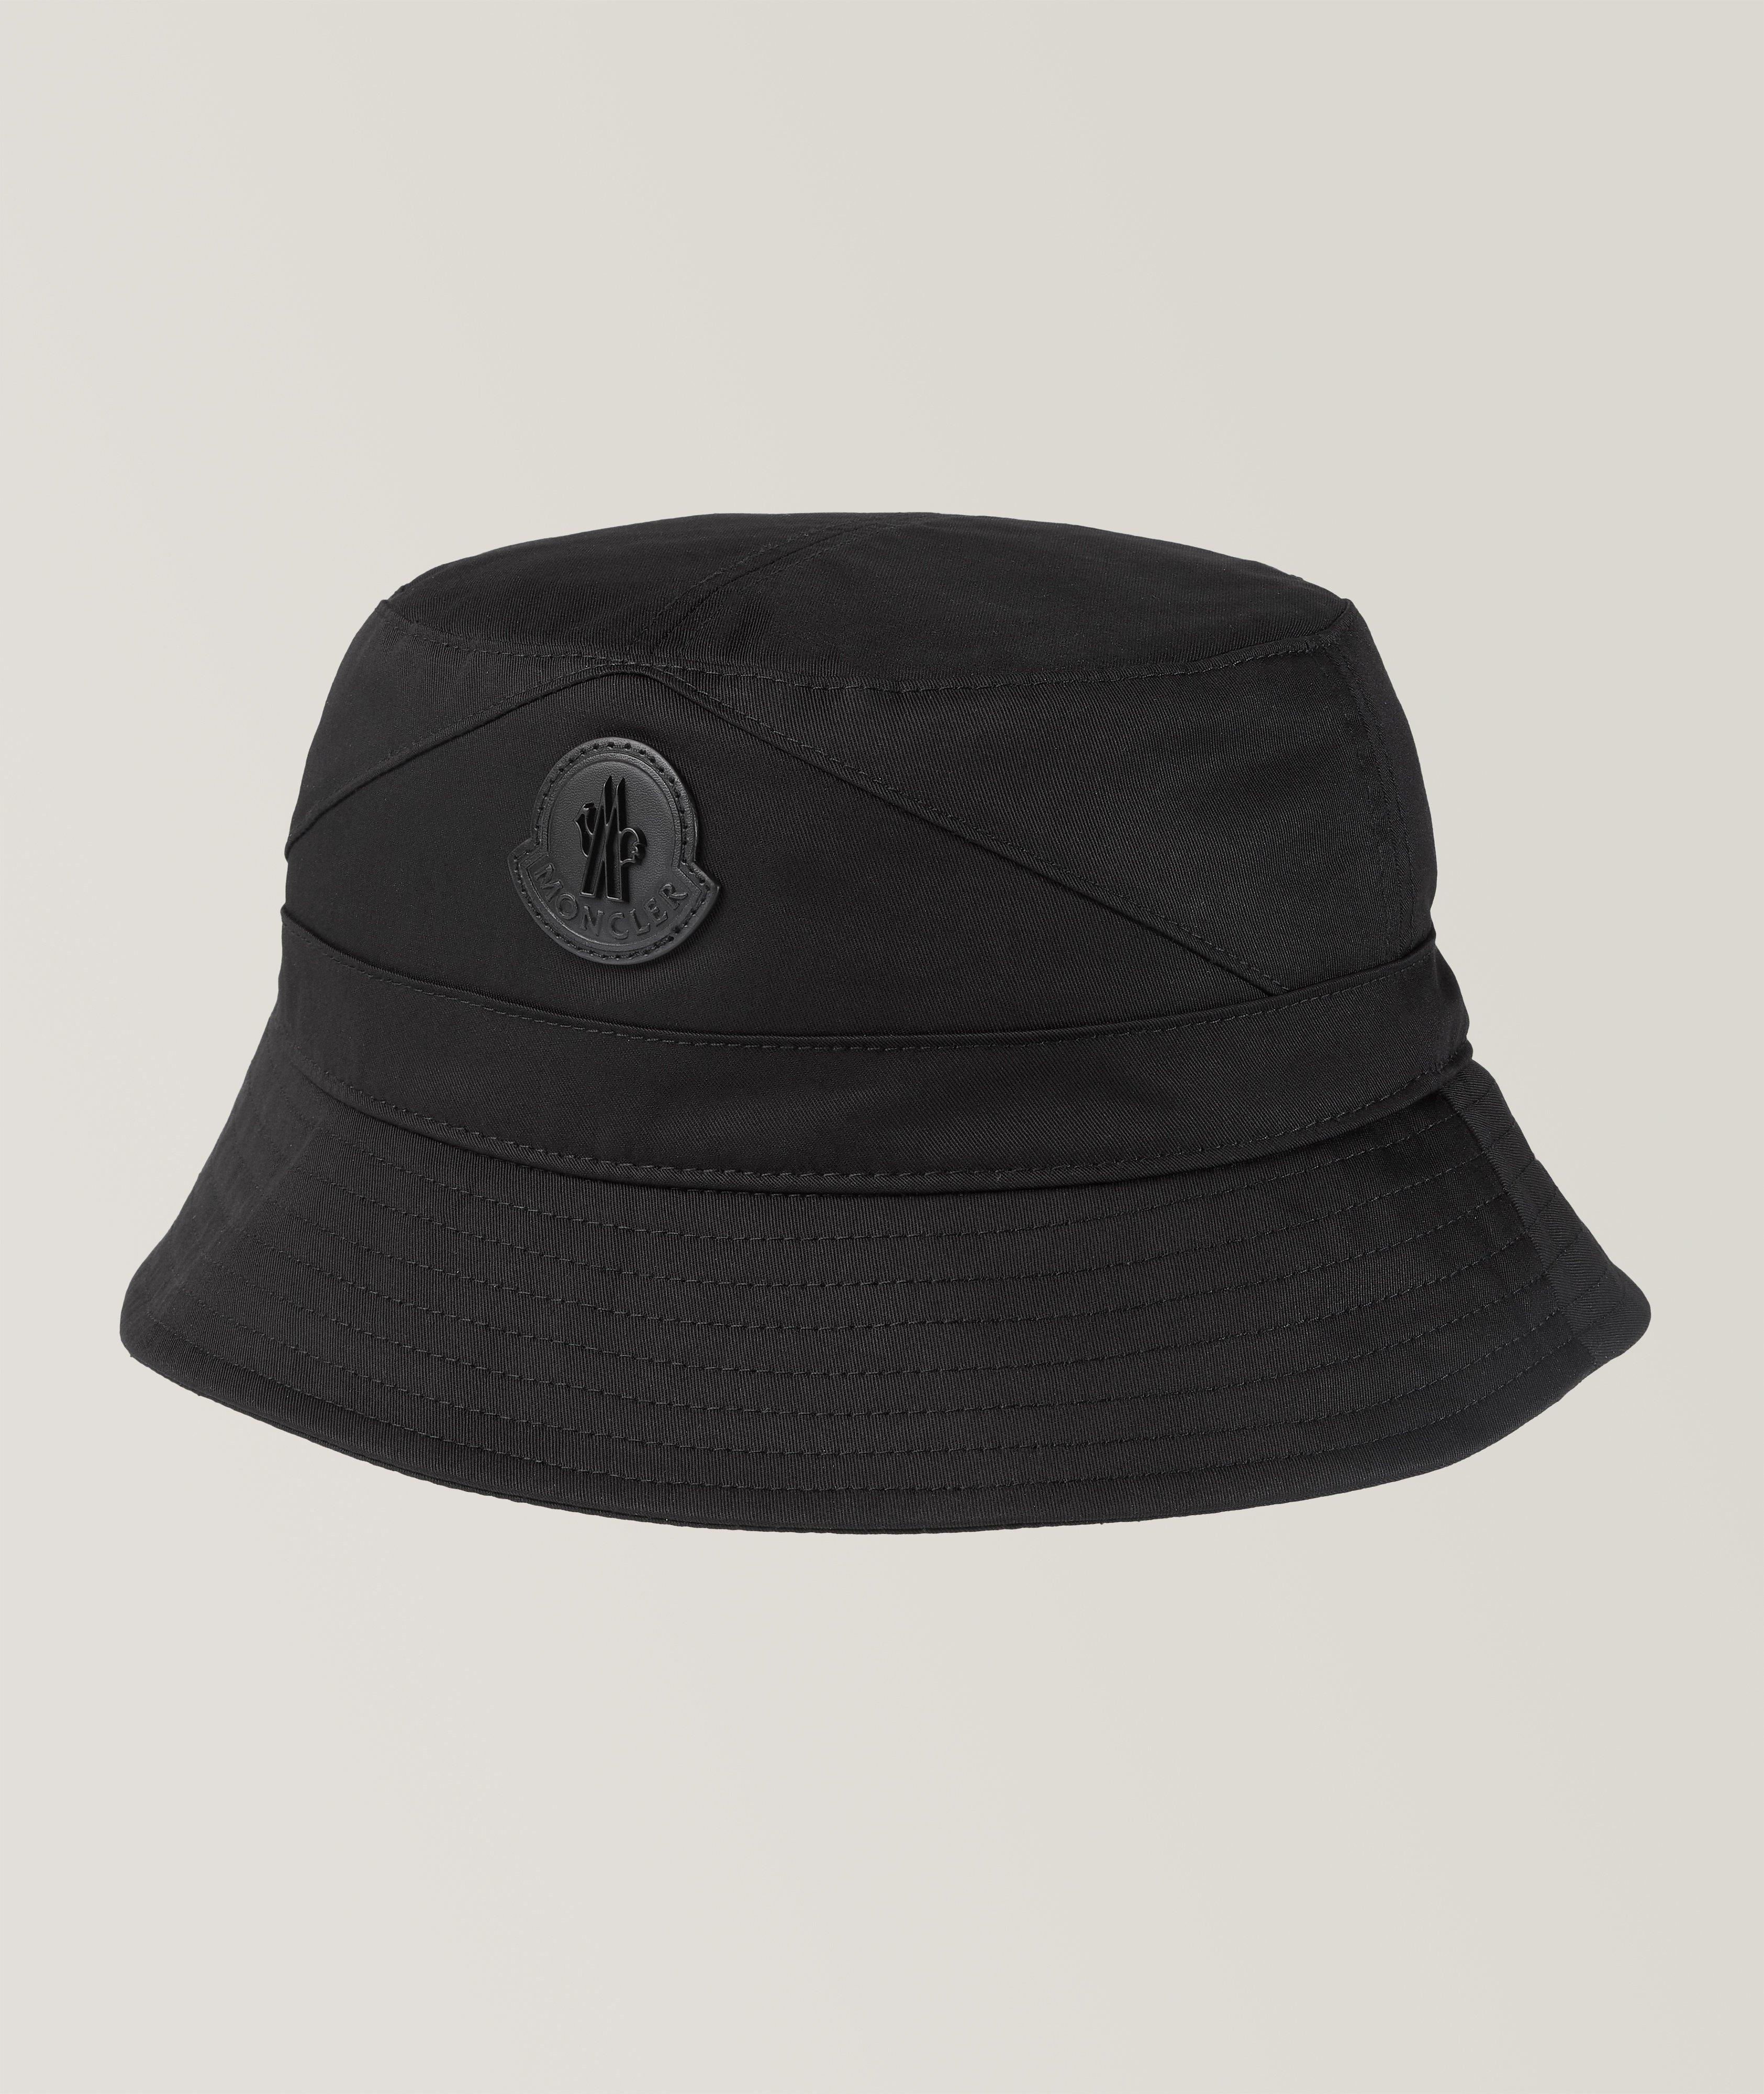 Chapeau cloche en coton avec logo image 0